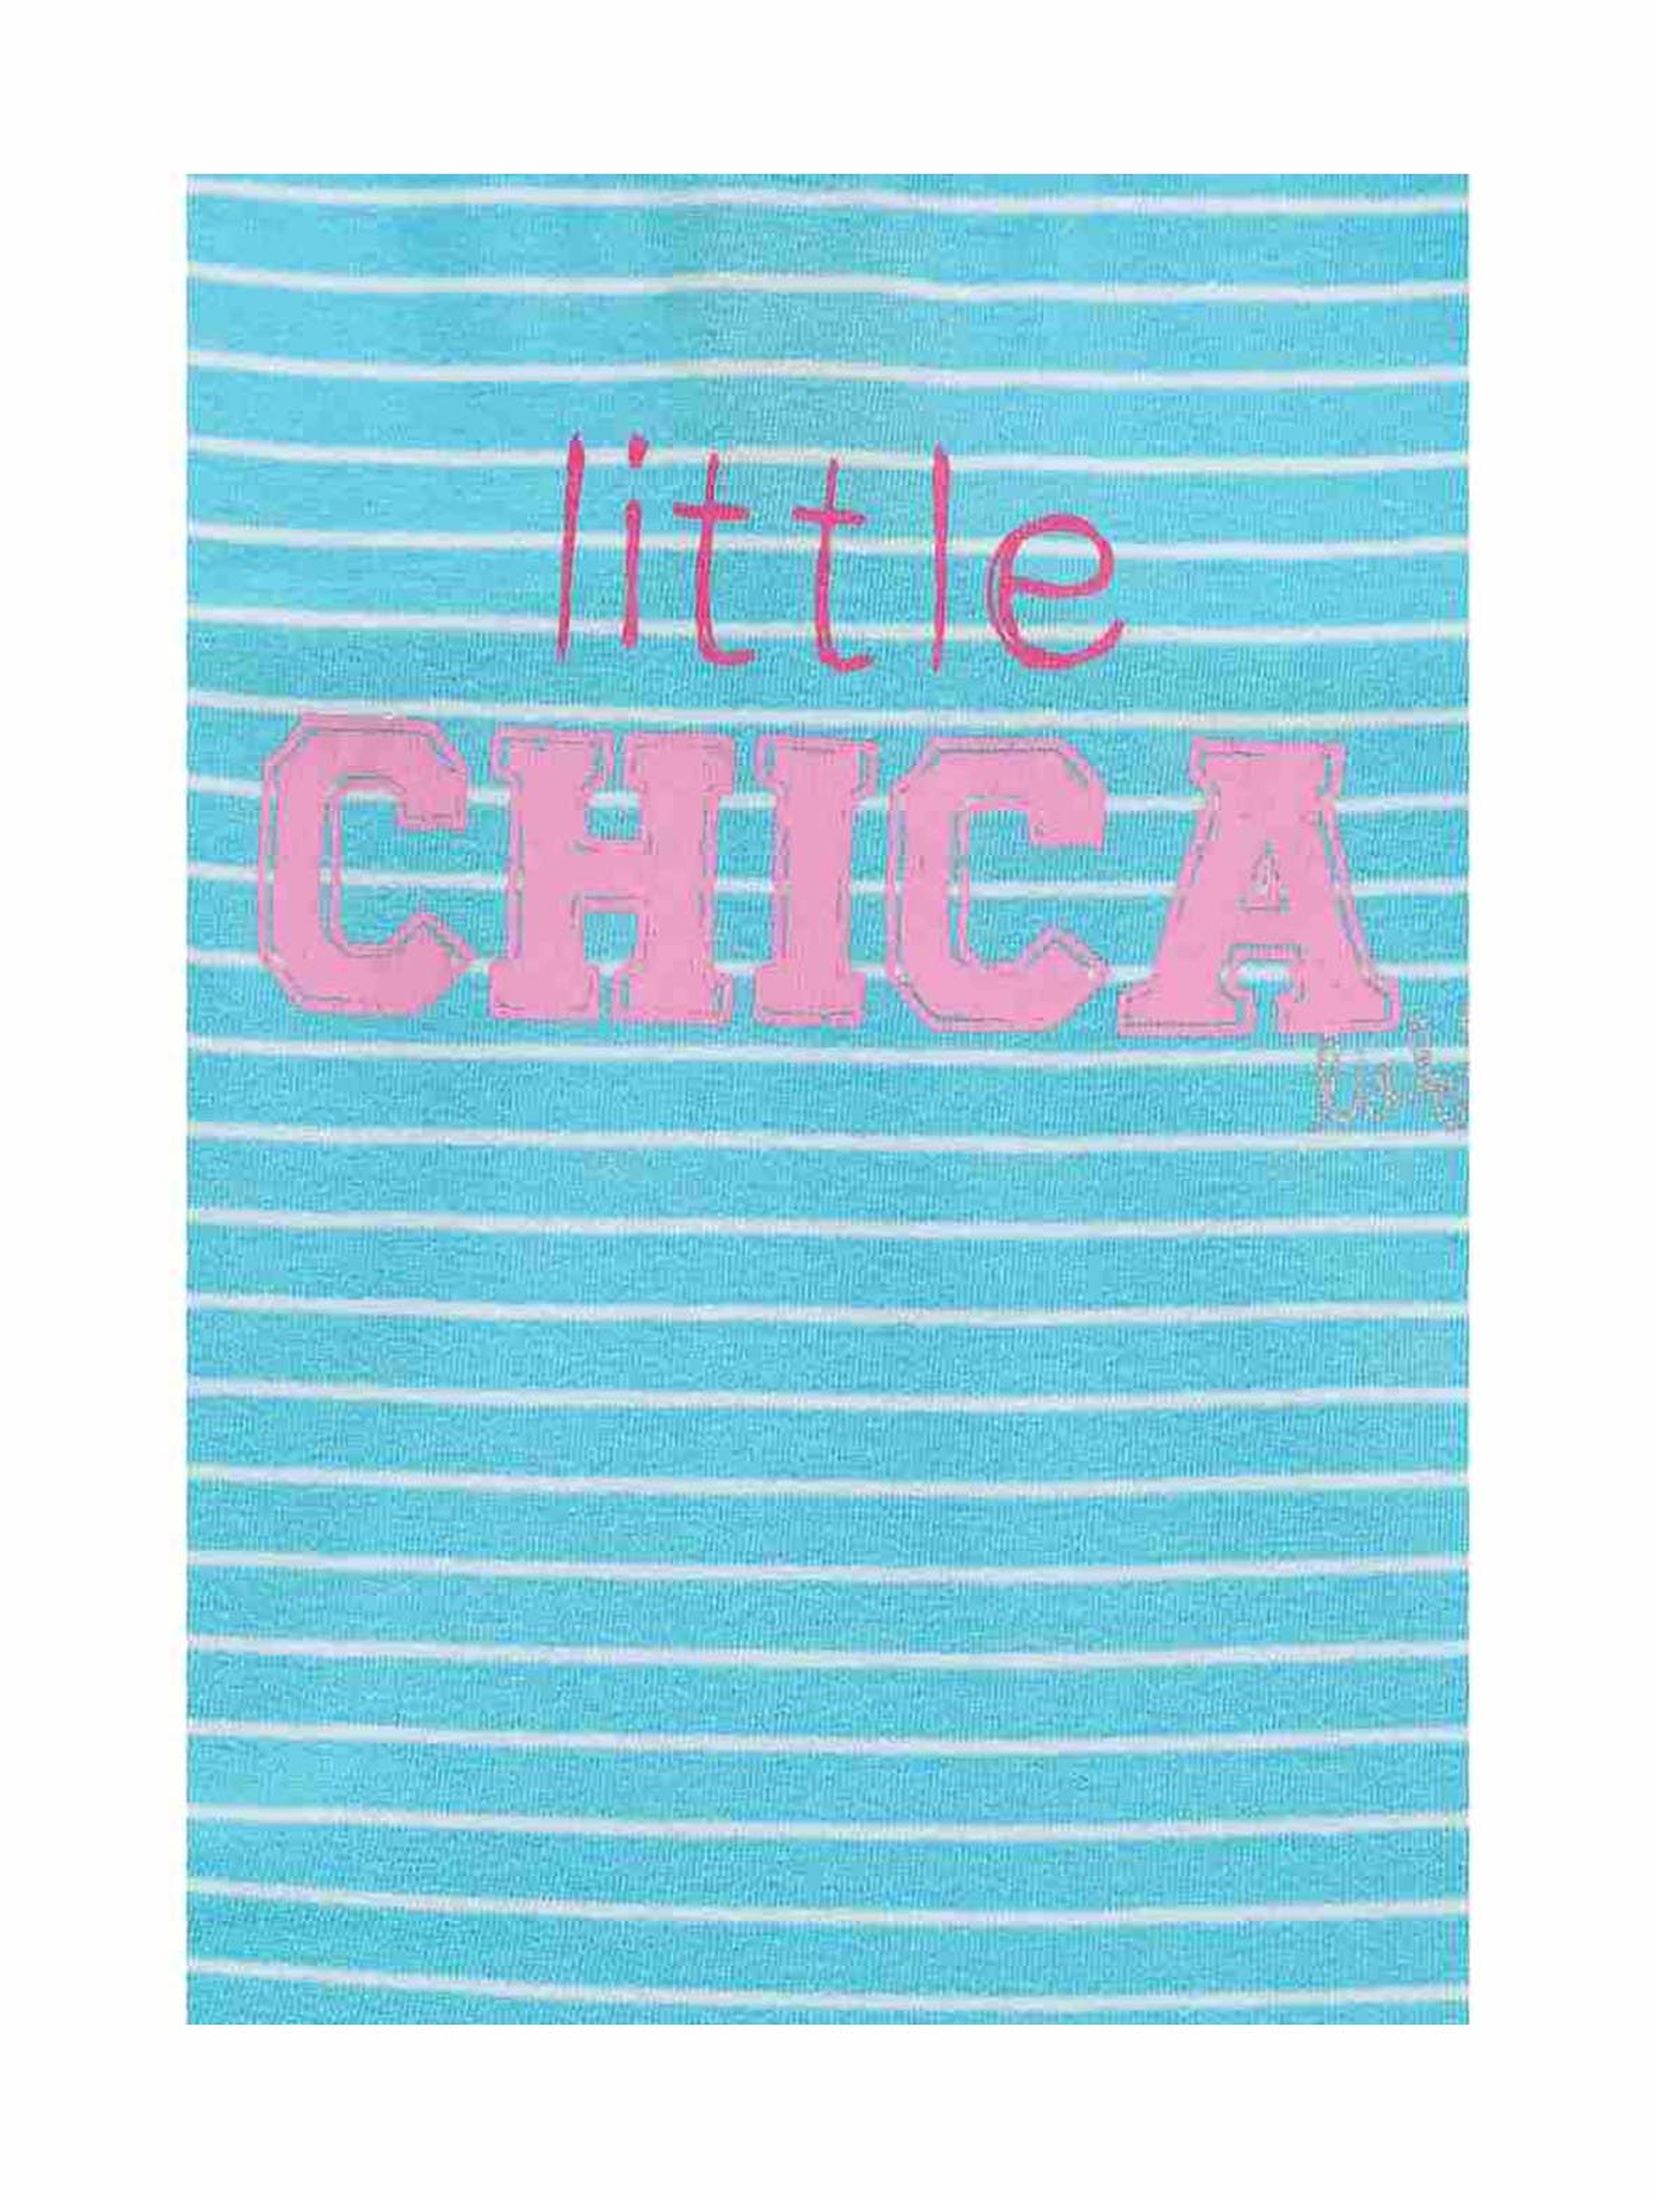 Sukienka dziewczęca na lato - niebiesko-biała - Little Chica - Lief